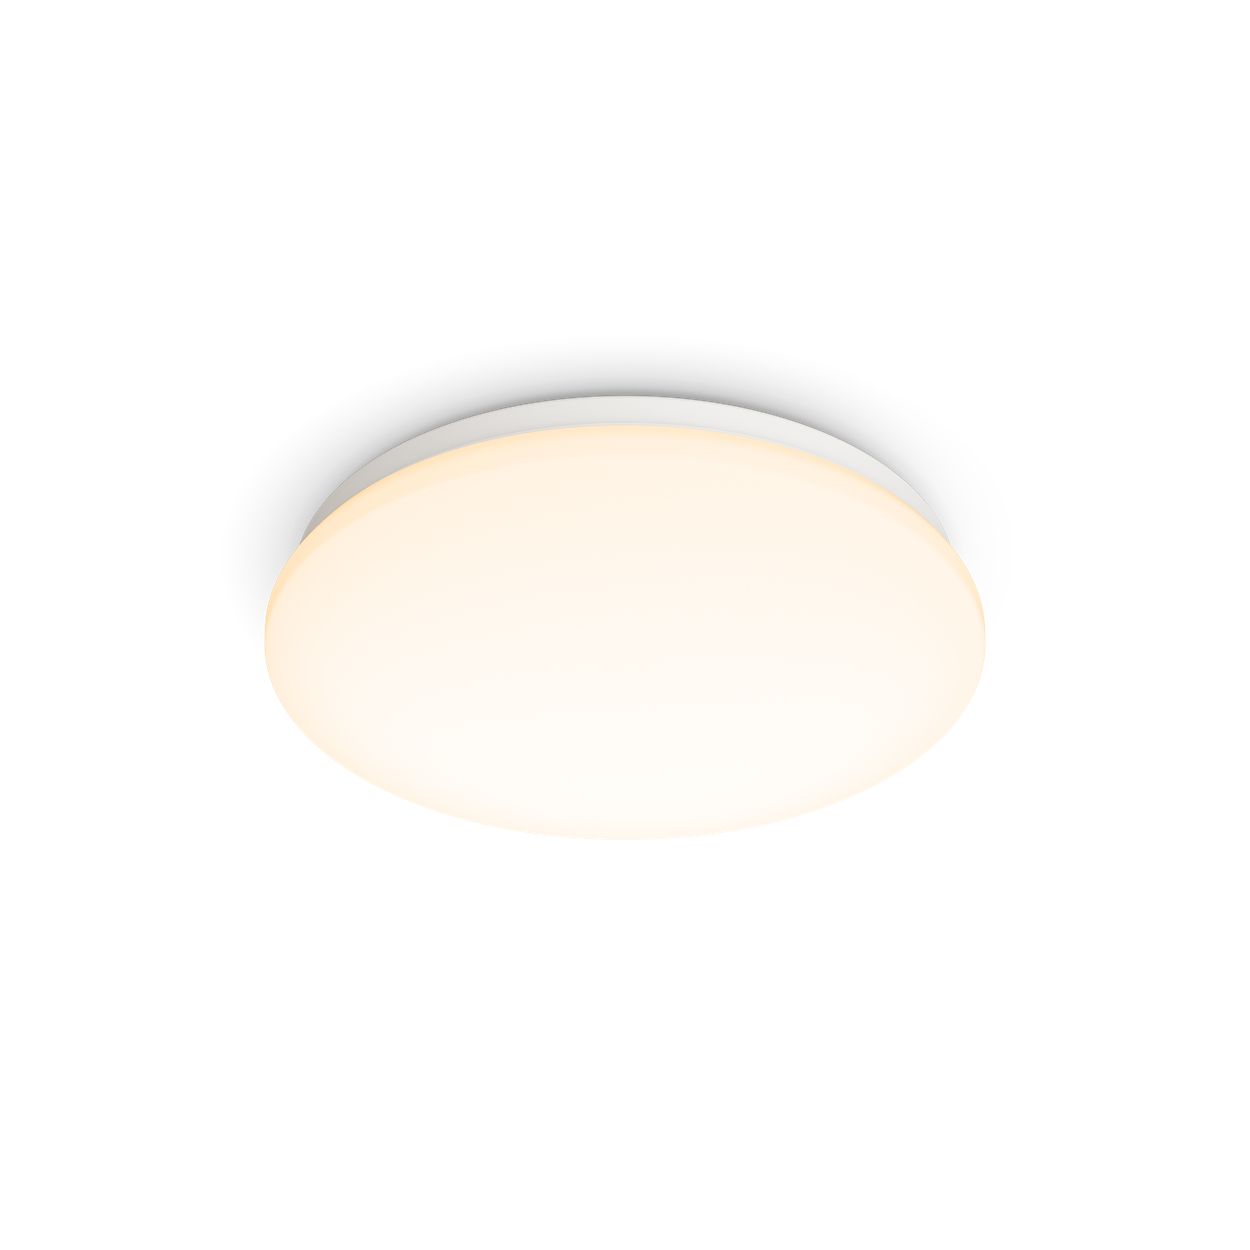 Komfortowe oświetlenie LED, które nie jest męczące dla oczu